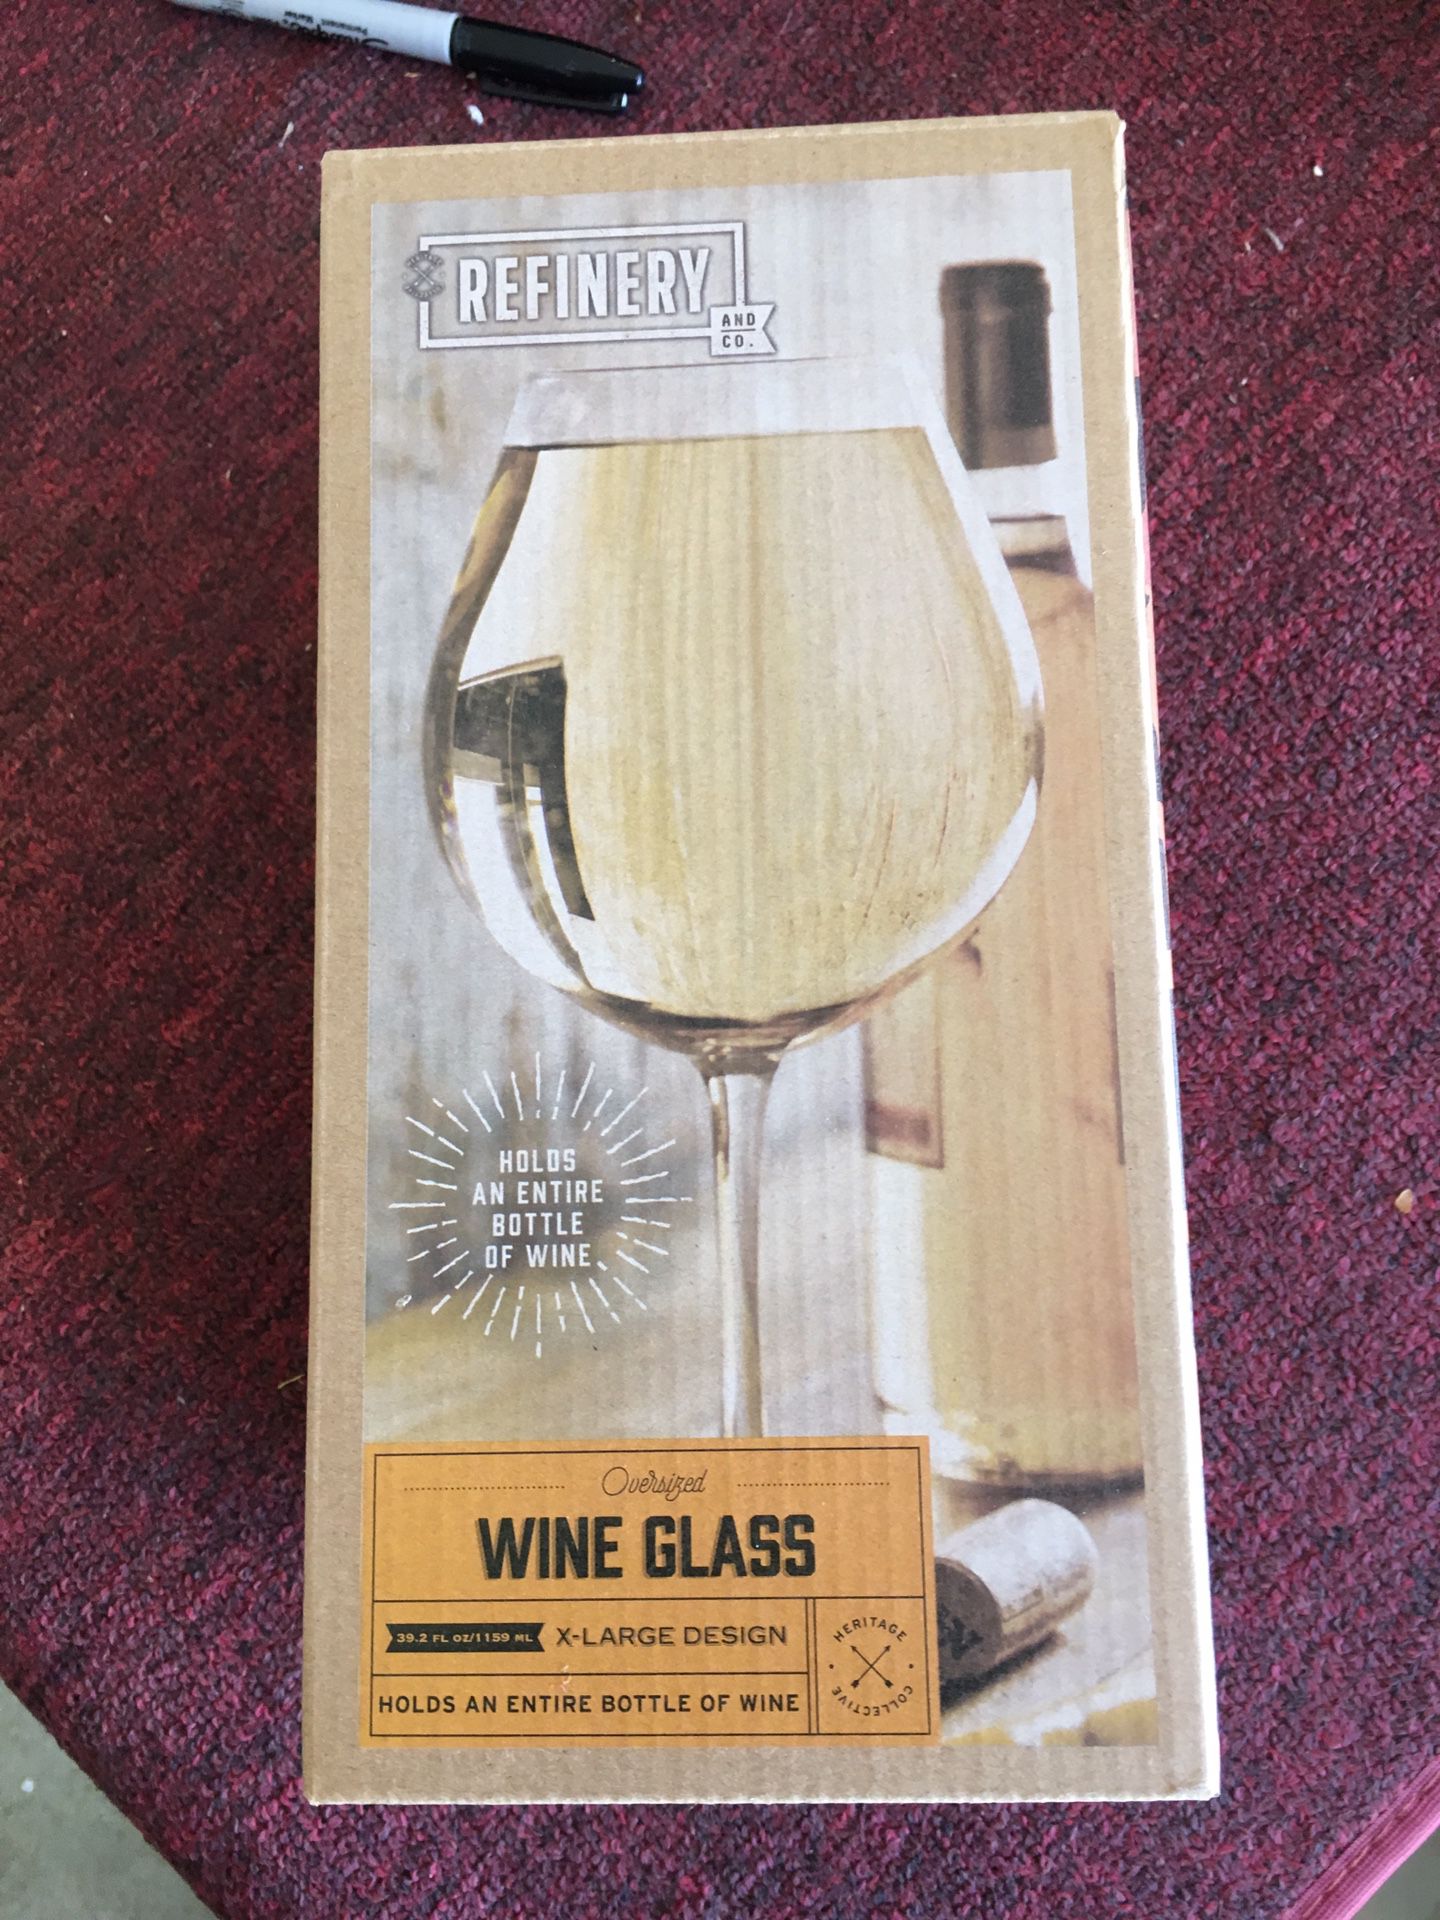 New in box wine glass